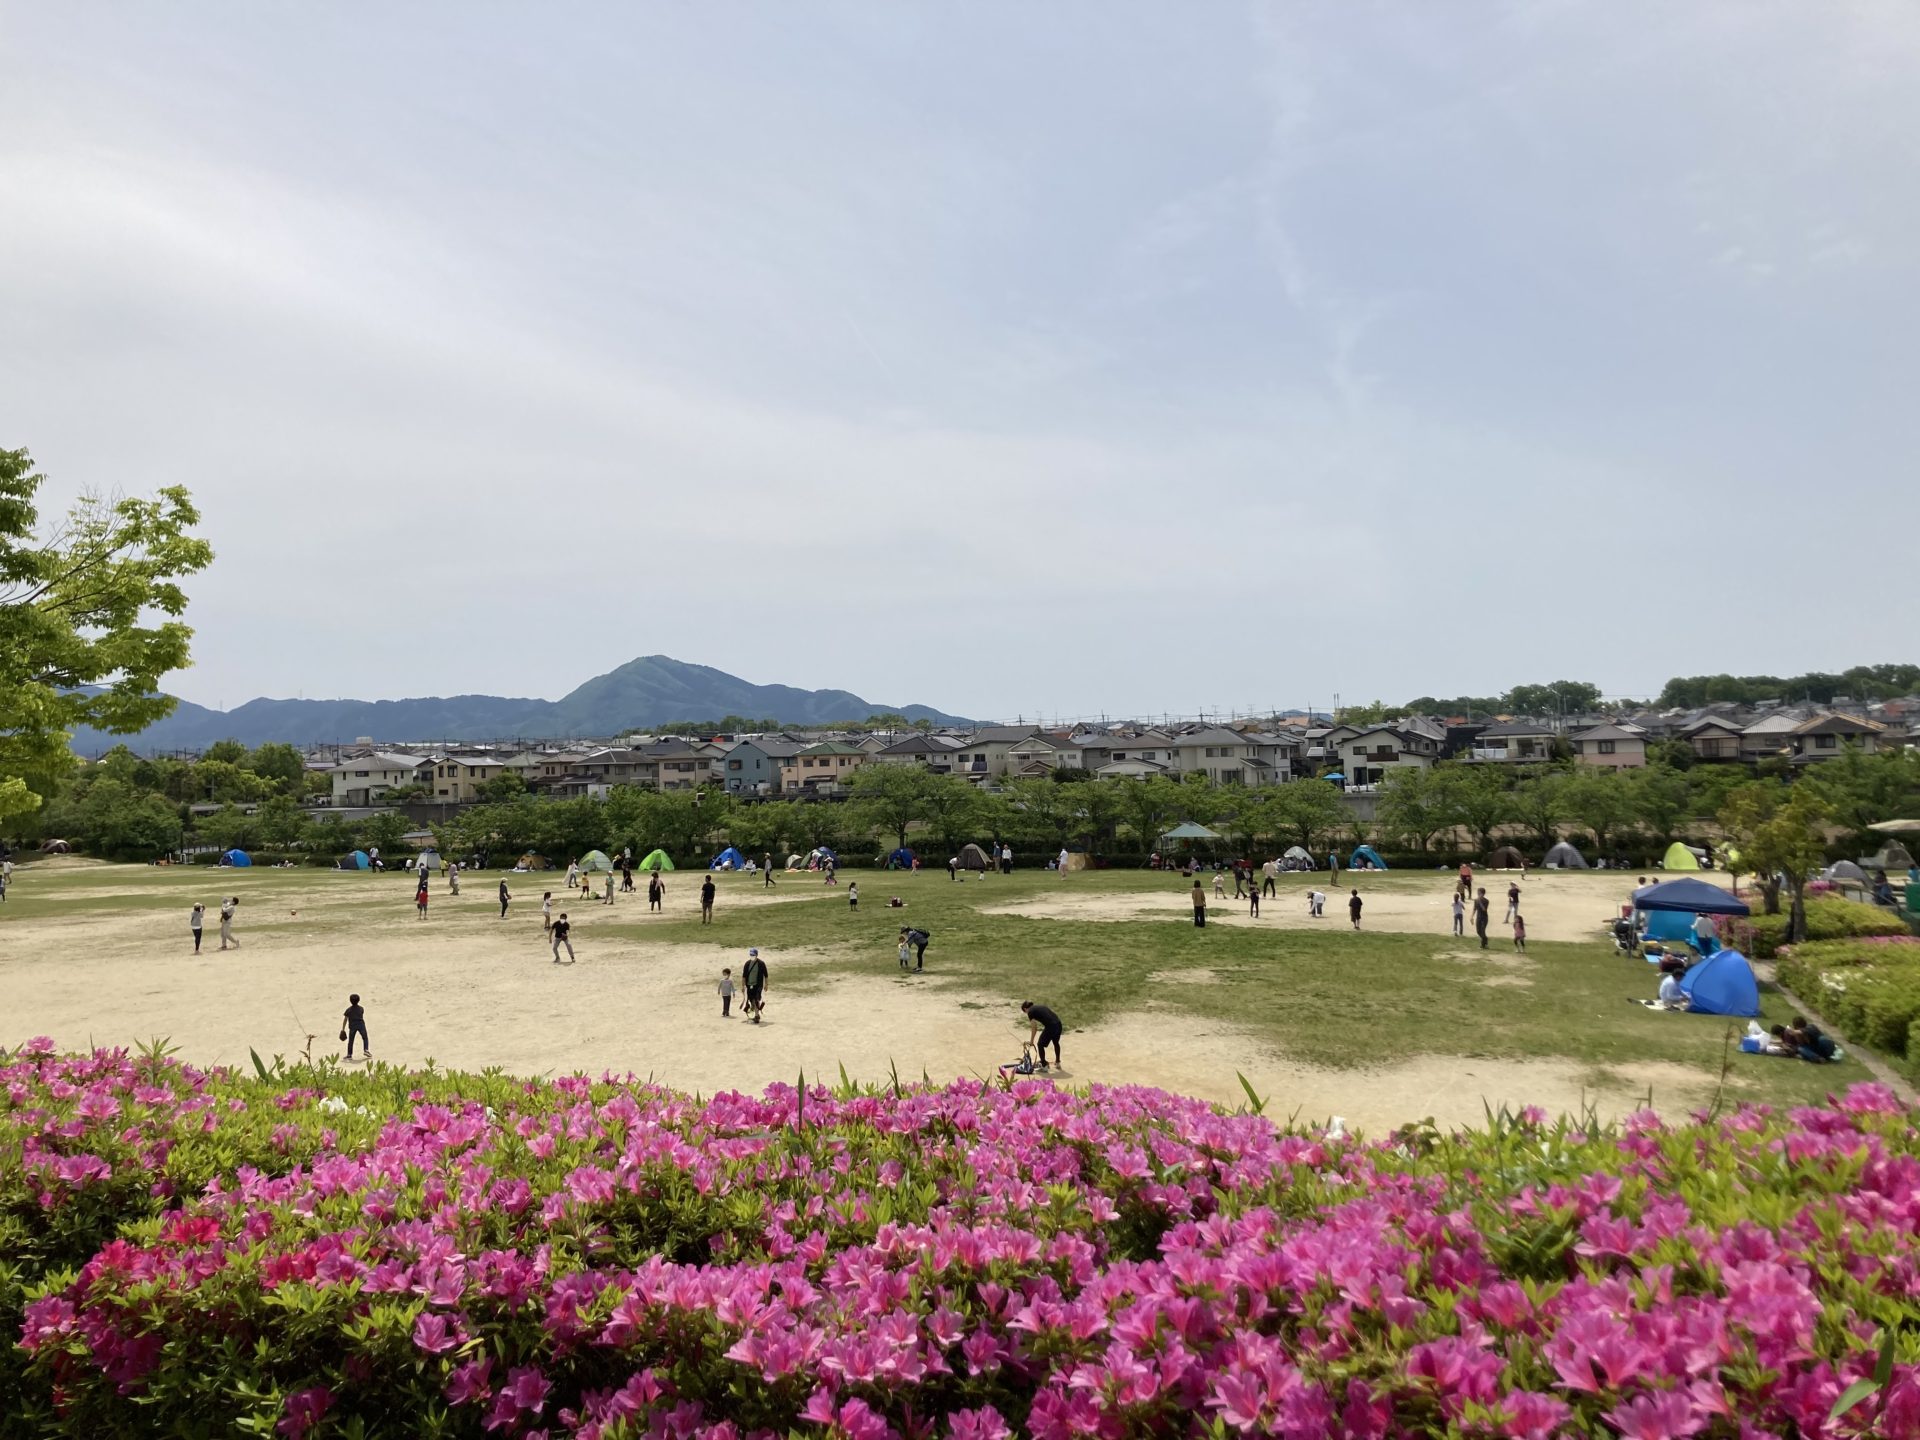 竹取公園のみんなの広場の広いグラウンド。